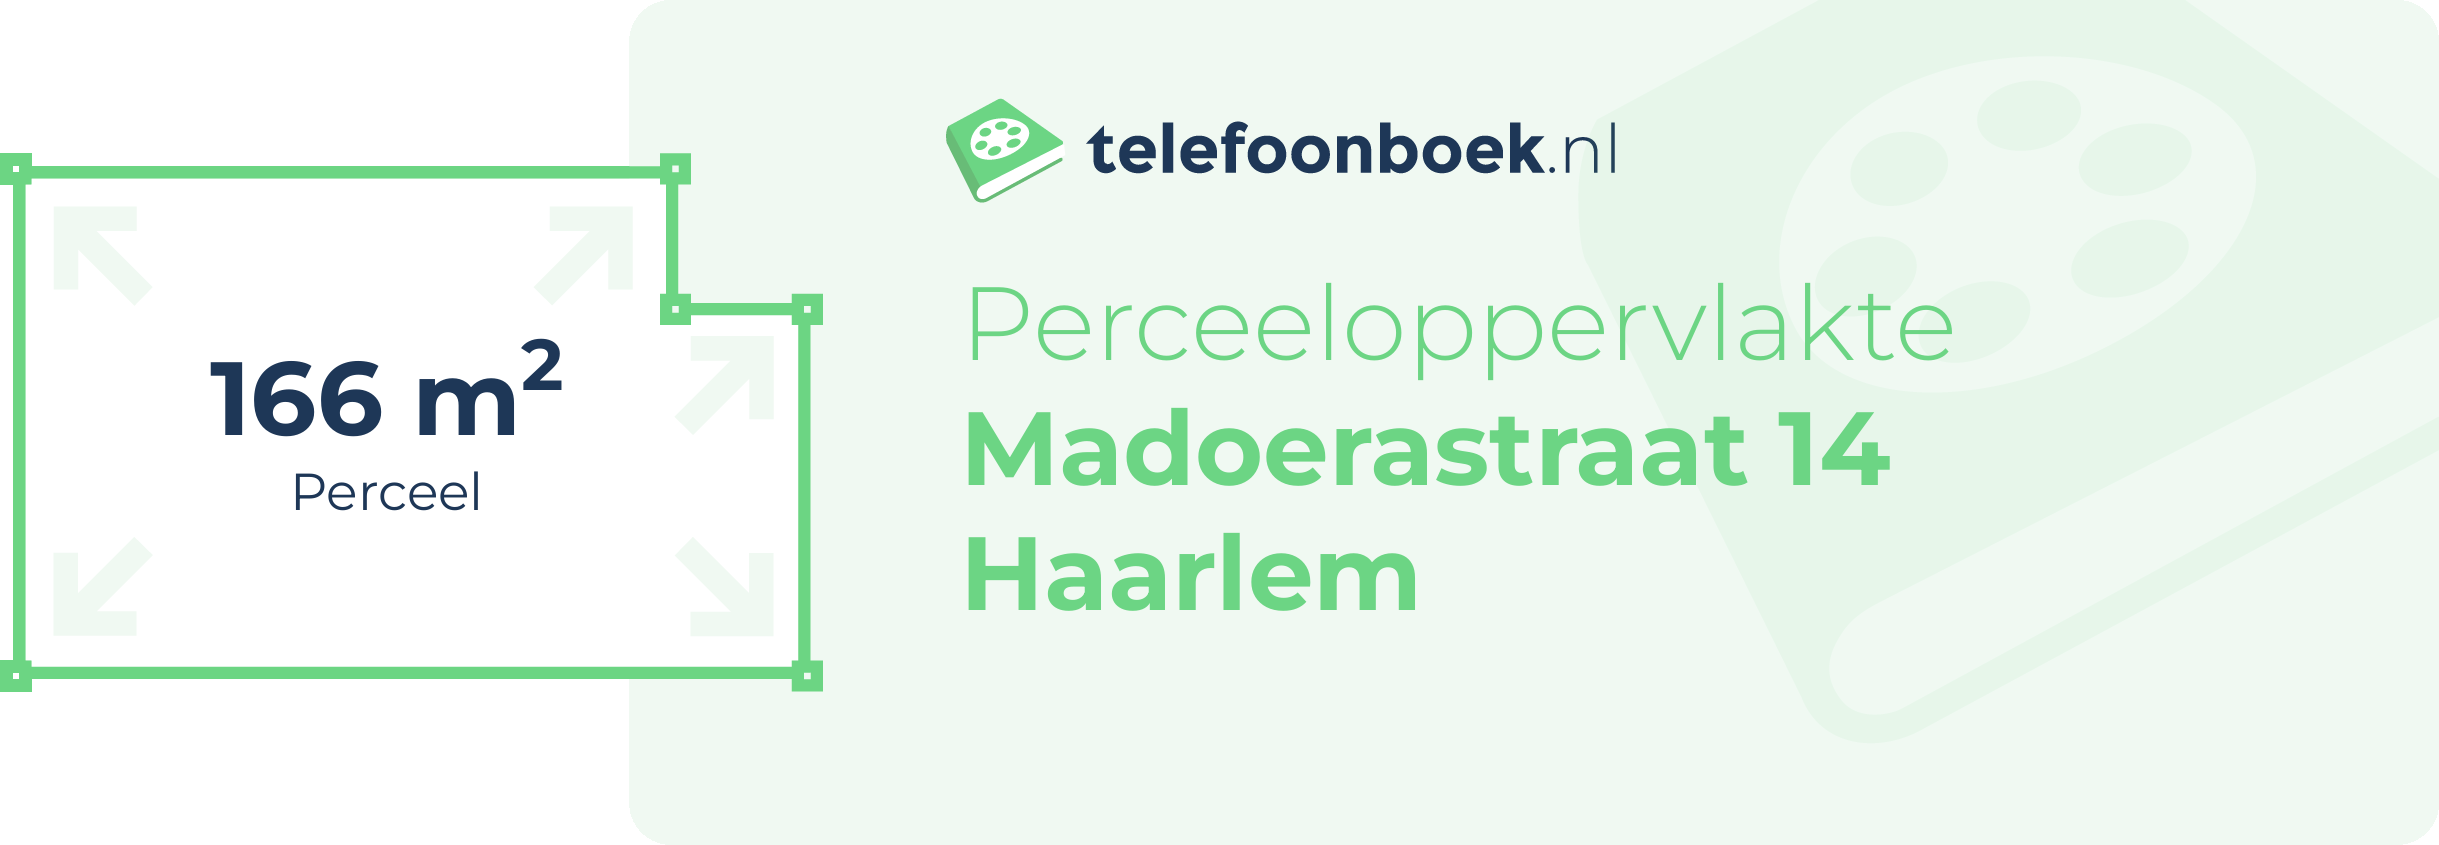 Perceeloppervlakte Madoerastraat 14 Haarlem